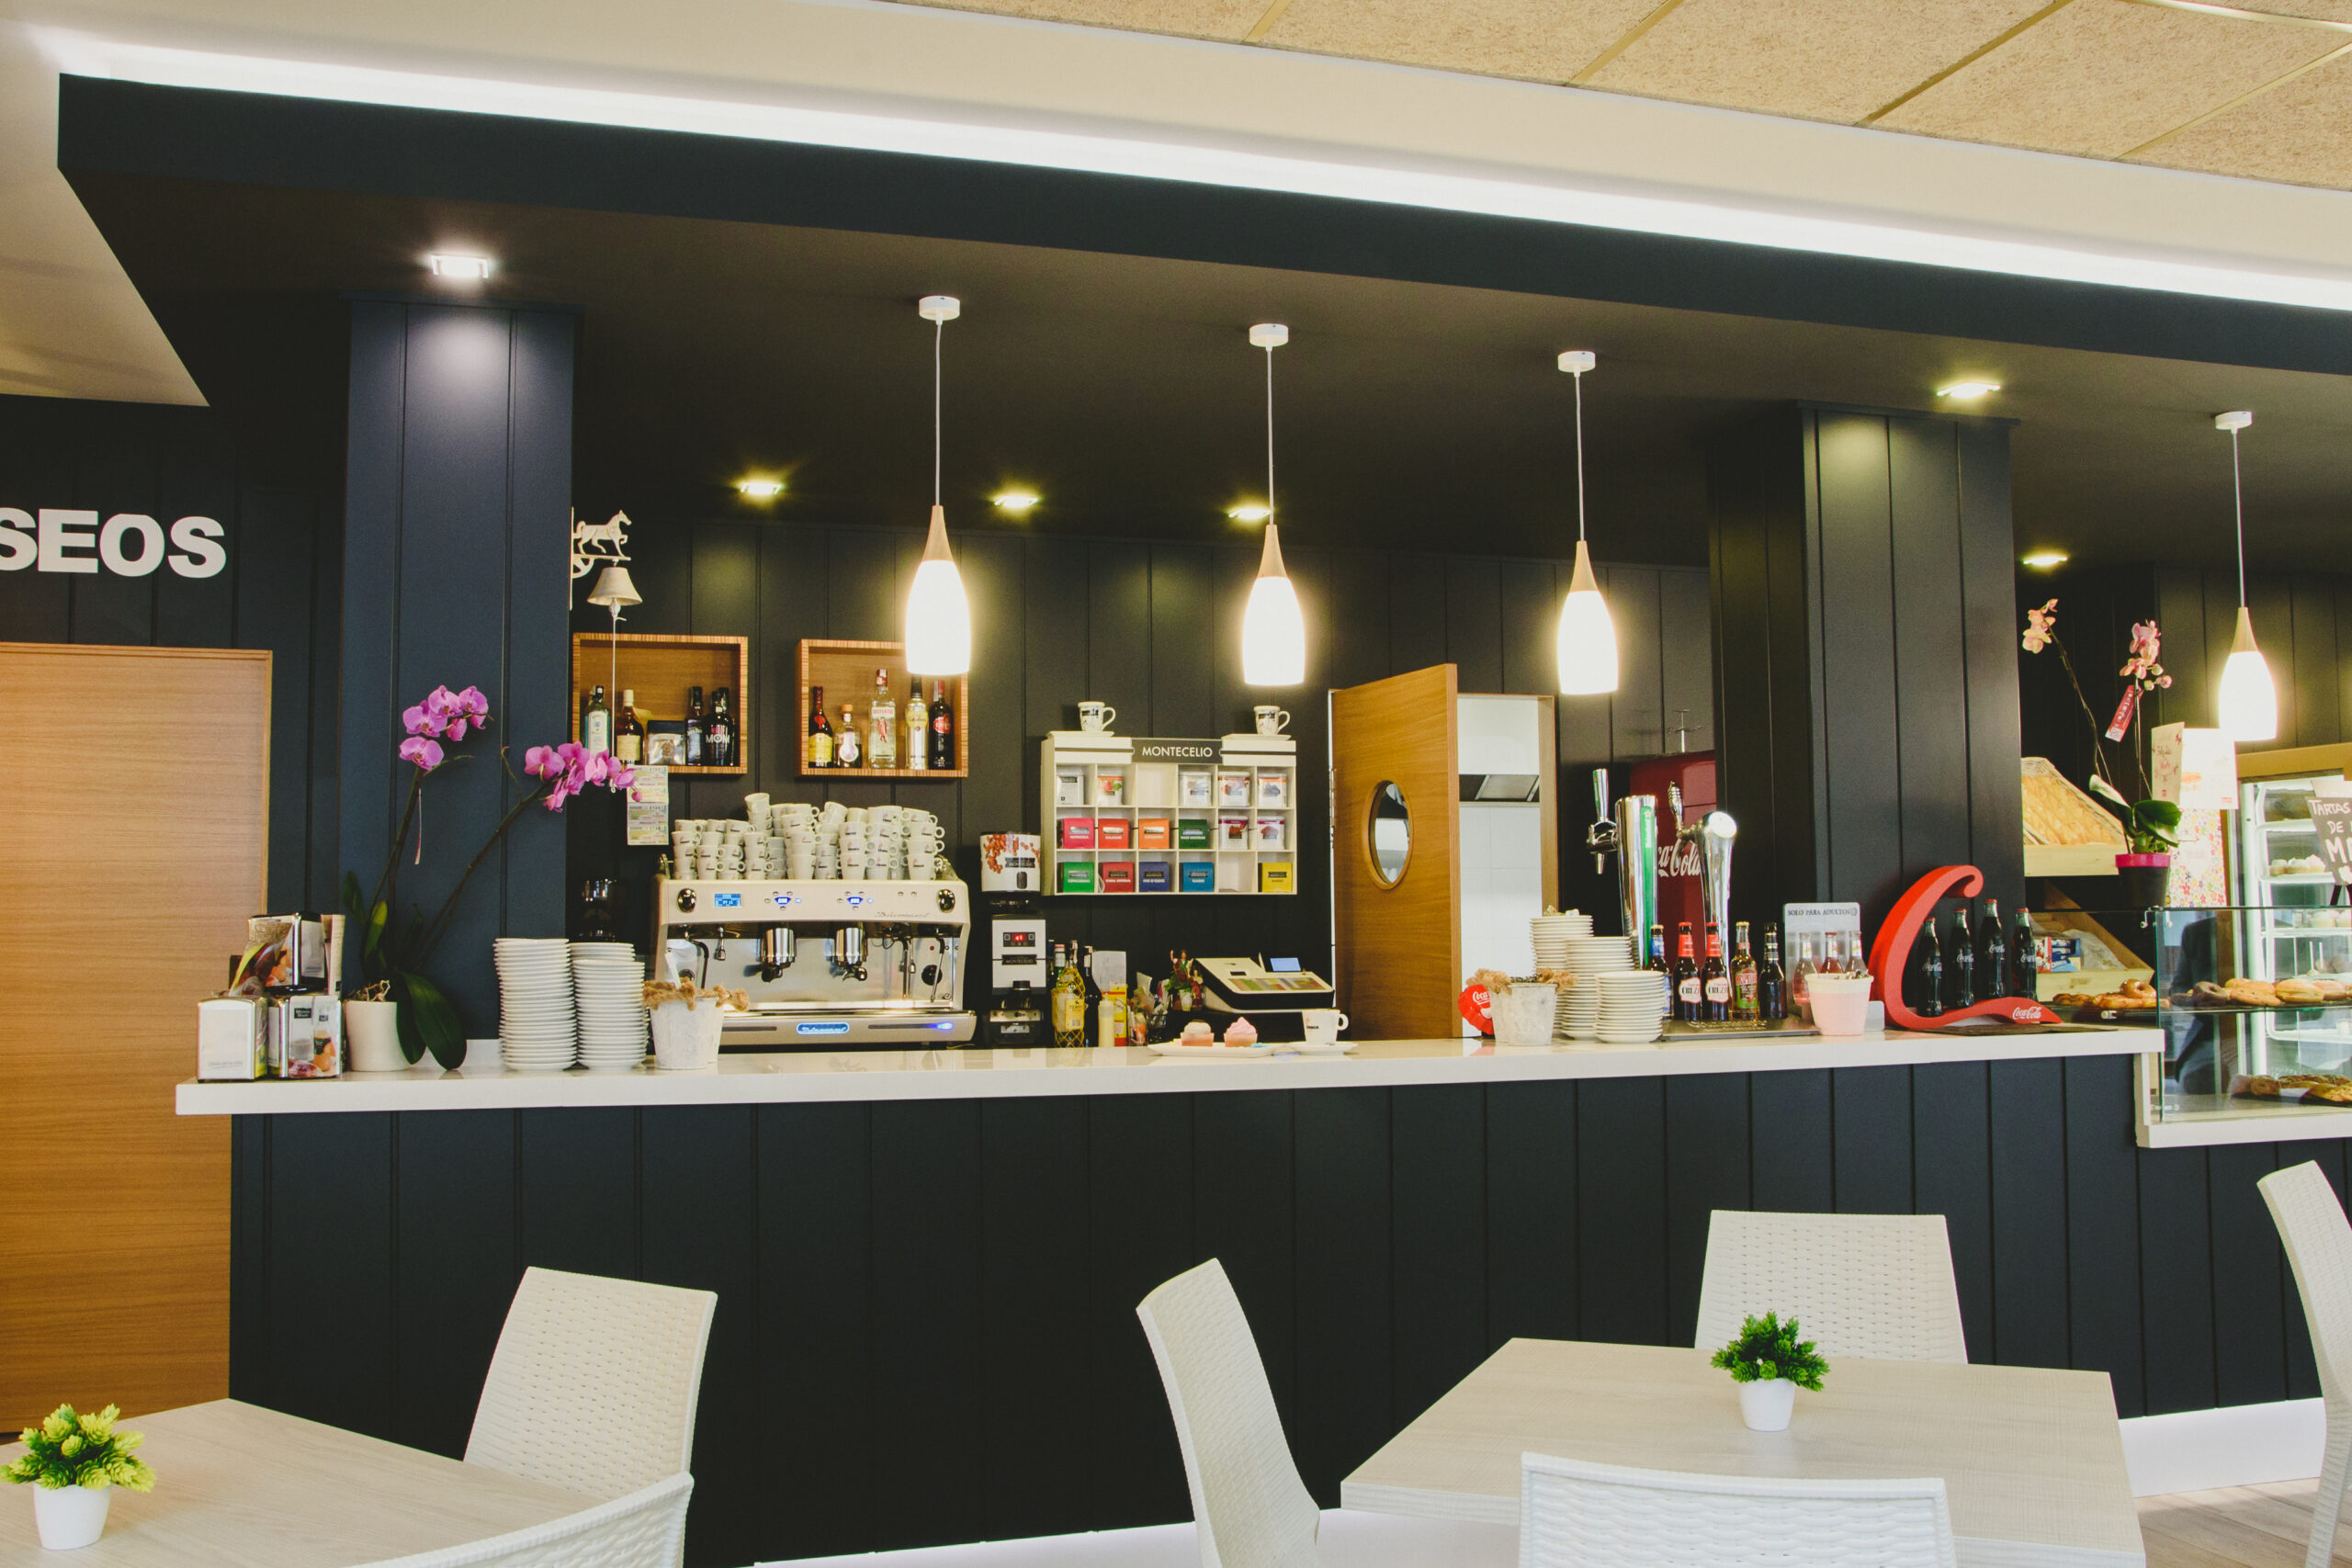 interiorismo marketing visual panaderia cafeteria valencia diseño mobiliario fabricación a medida panelado mostrador